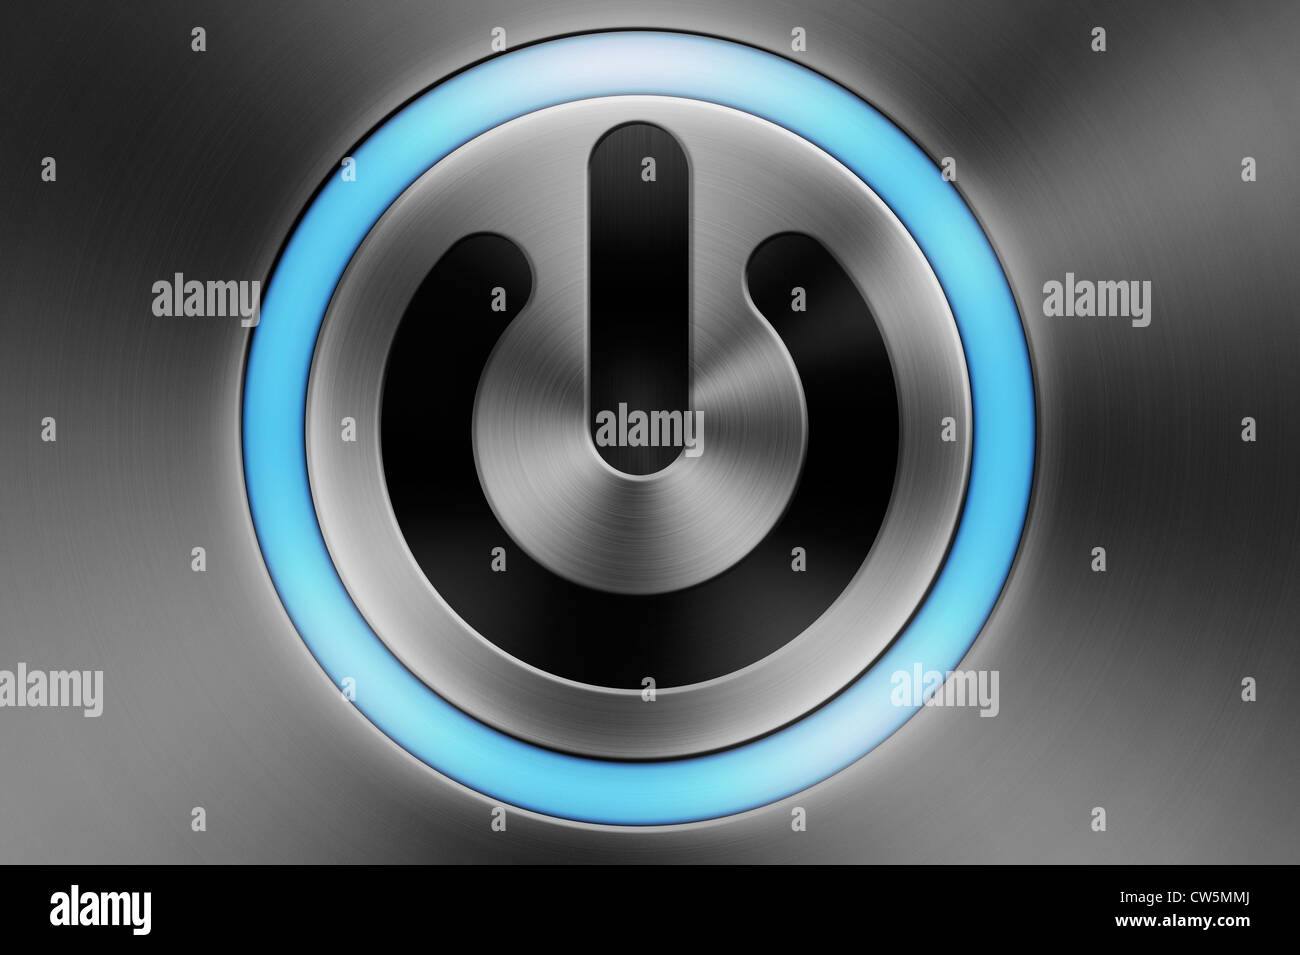 Eine blau leuchtende Computer Power/Standby- Taste auf einem Besen Aluminium Apple Mac style Hintergrund Stockfoto